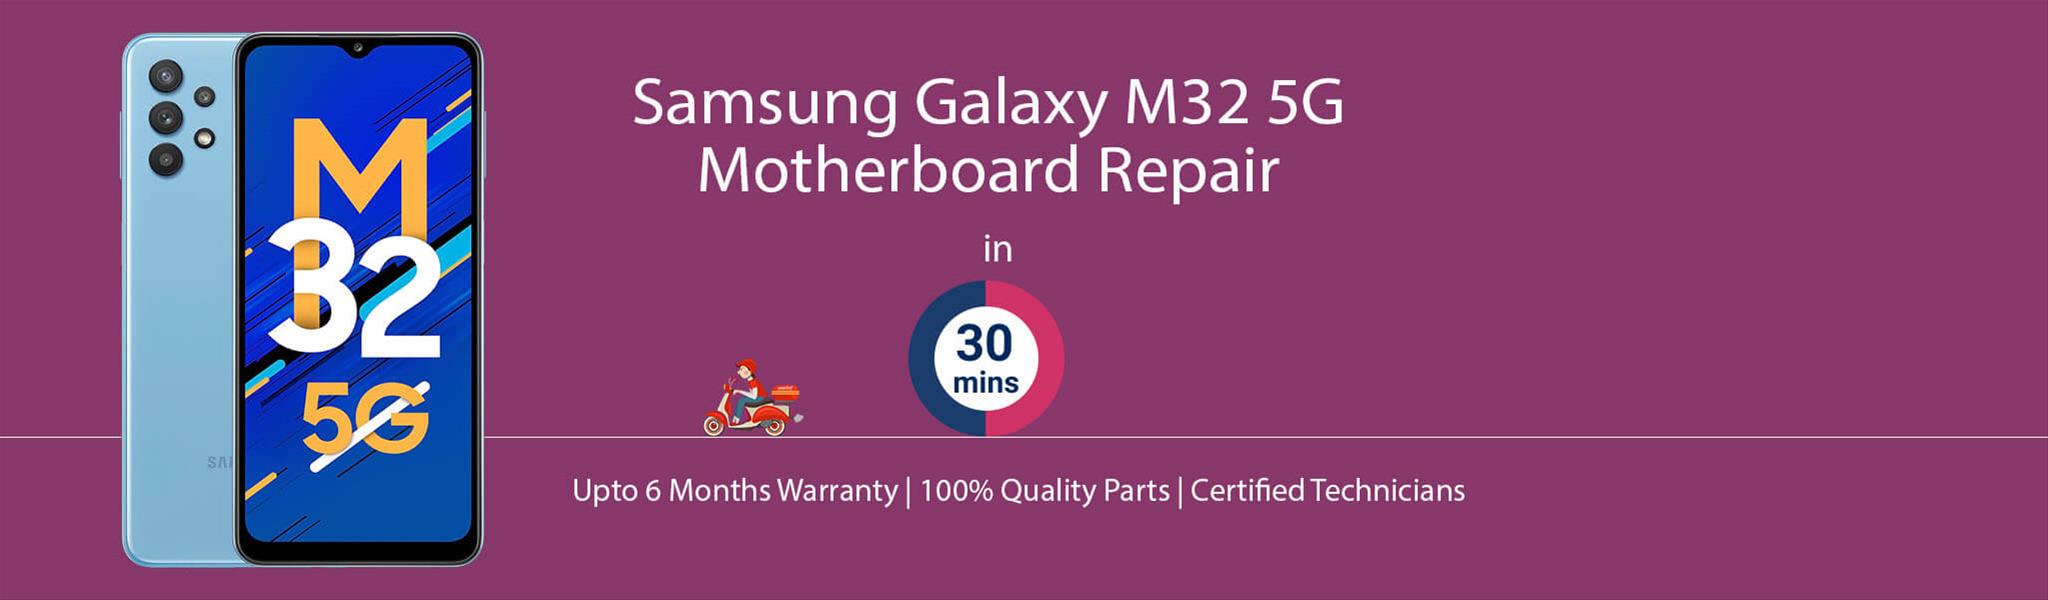 samsung-galaxy-m32-5g-motherboard-repair.jpg